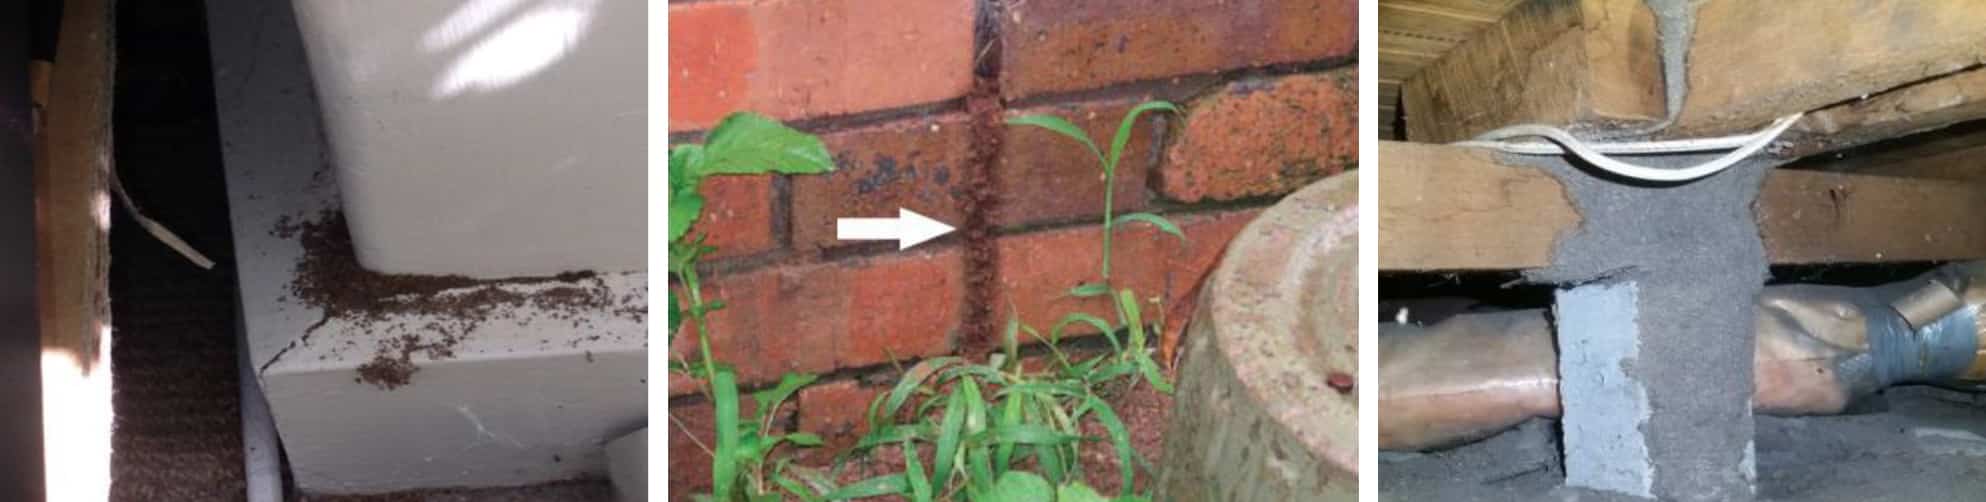 termite control melbourne